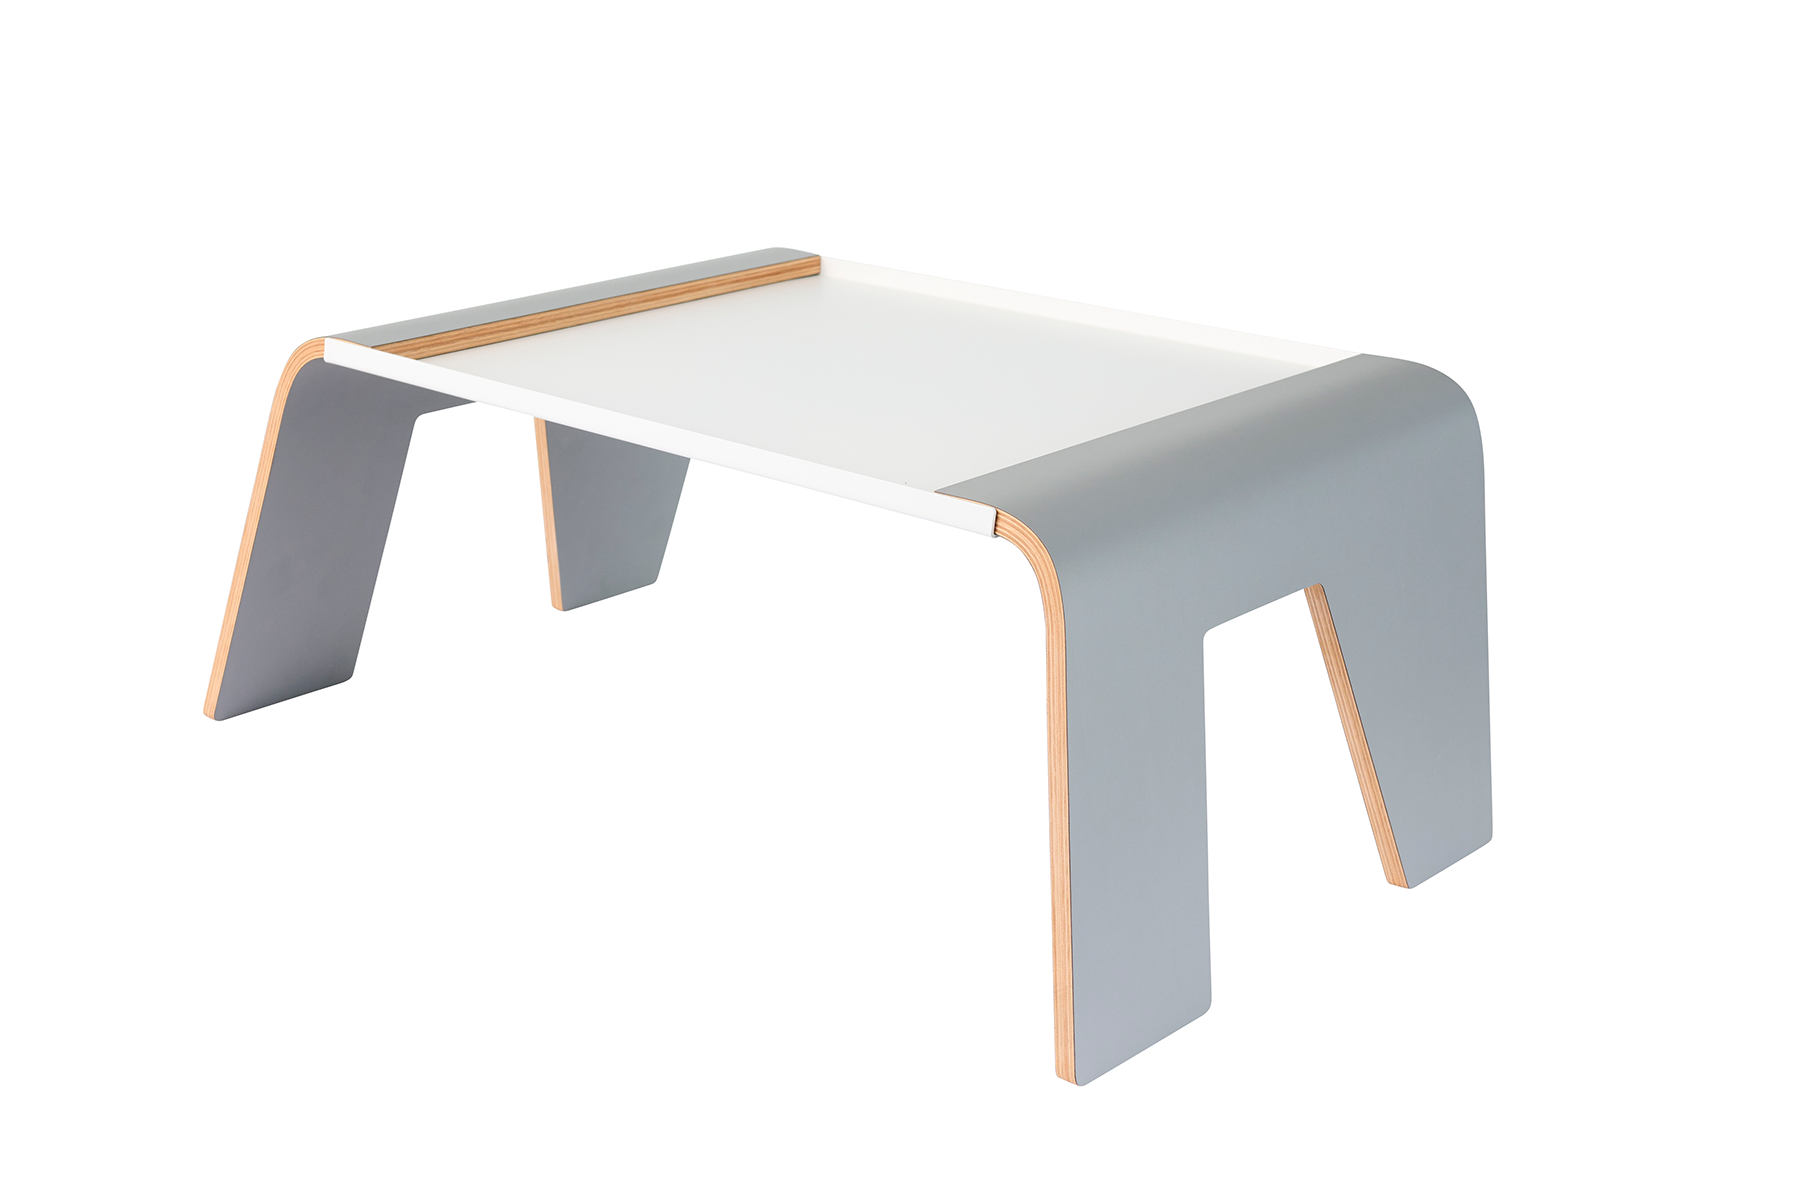 Tojo-praktisch grau/weiß in grau/weiss präsentiert im Onlineshop von KAQTU Design AG. Tablar ist von Tojo